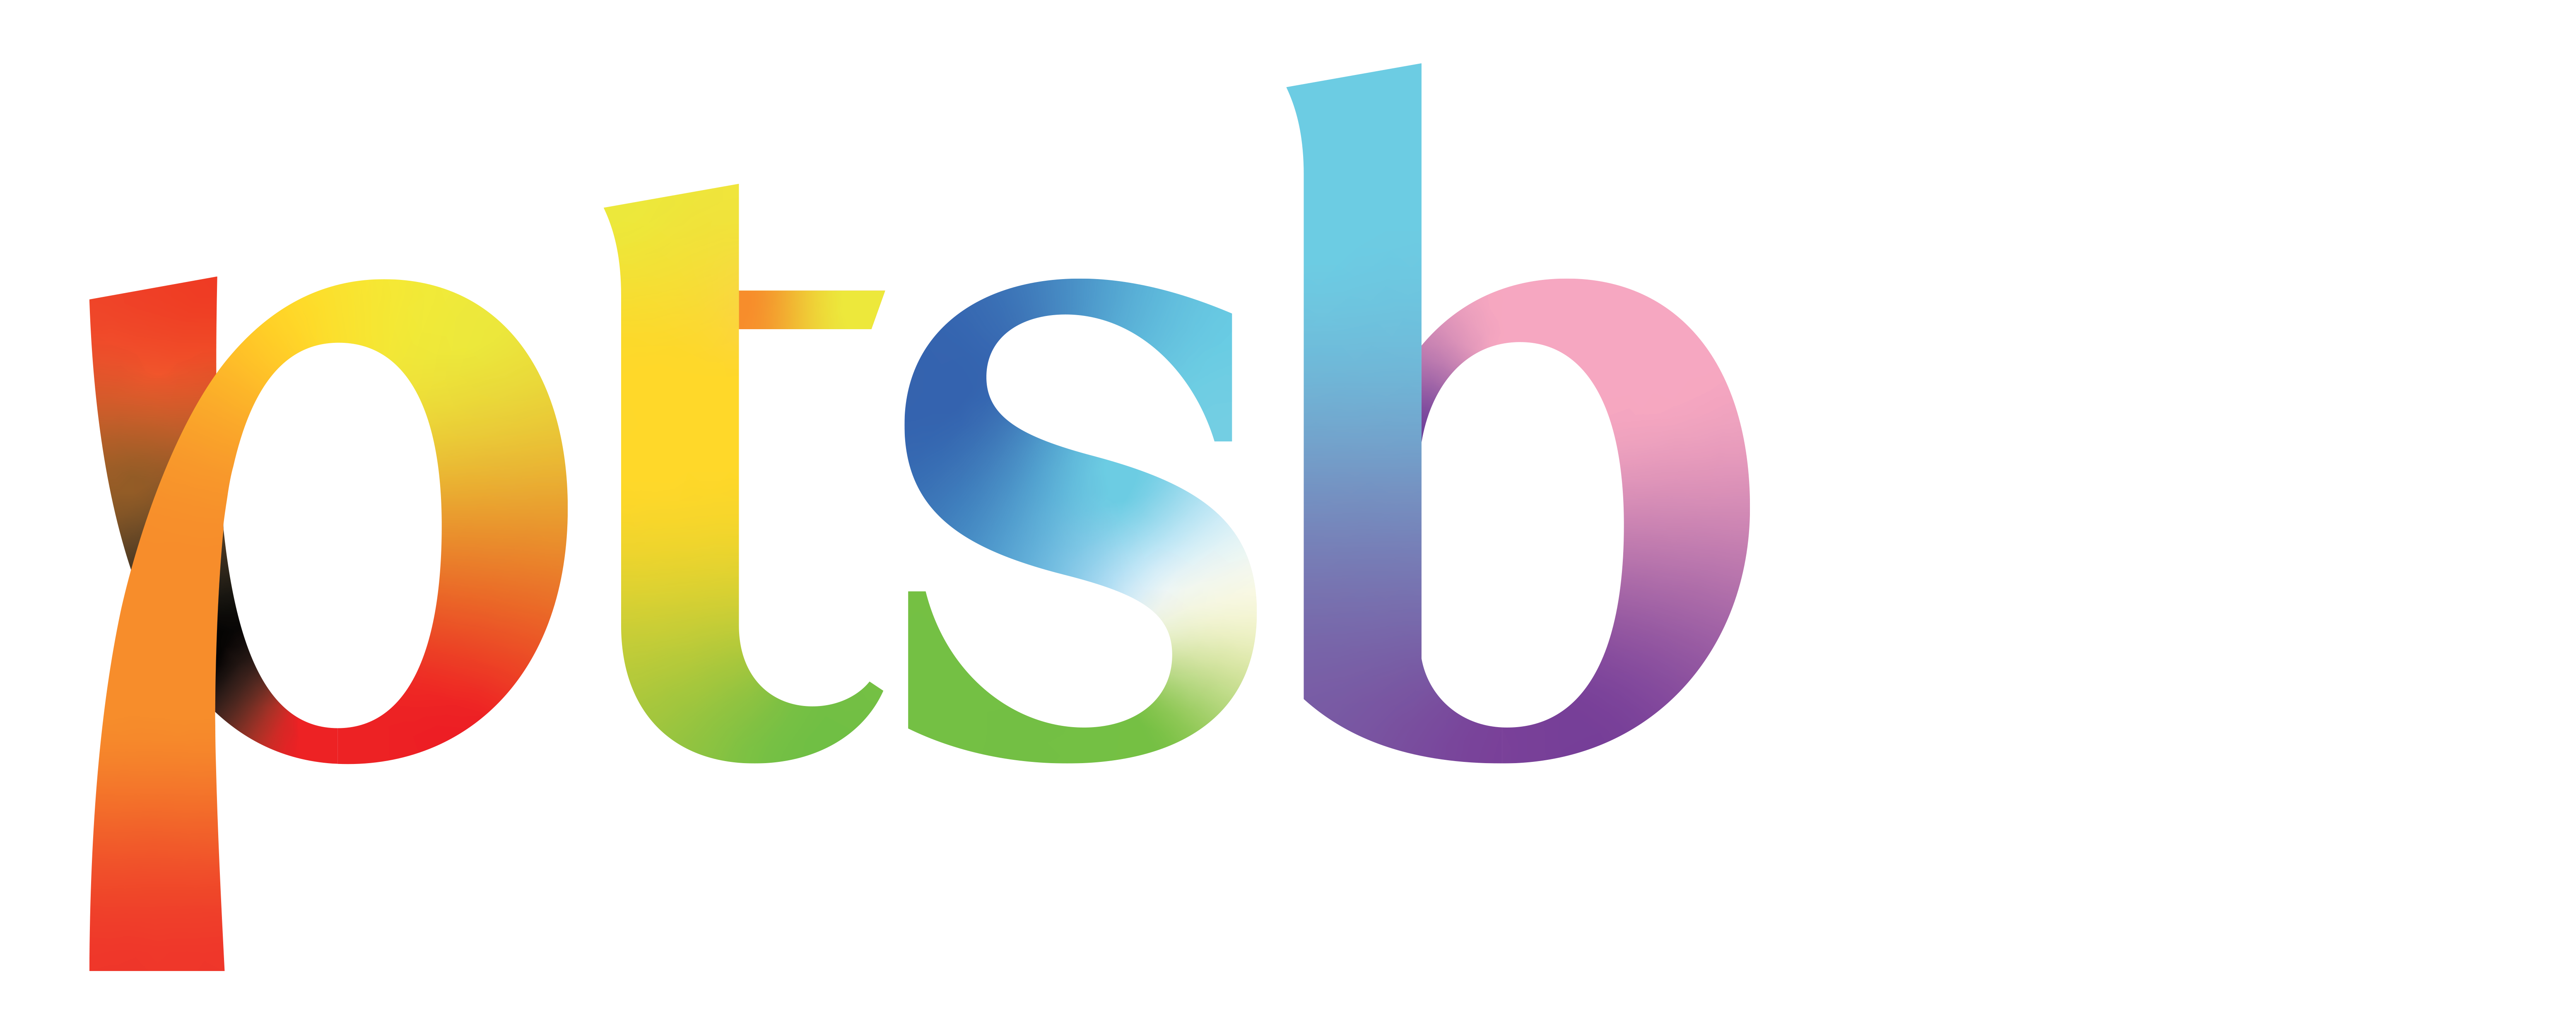 PTSB banking logo